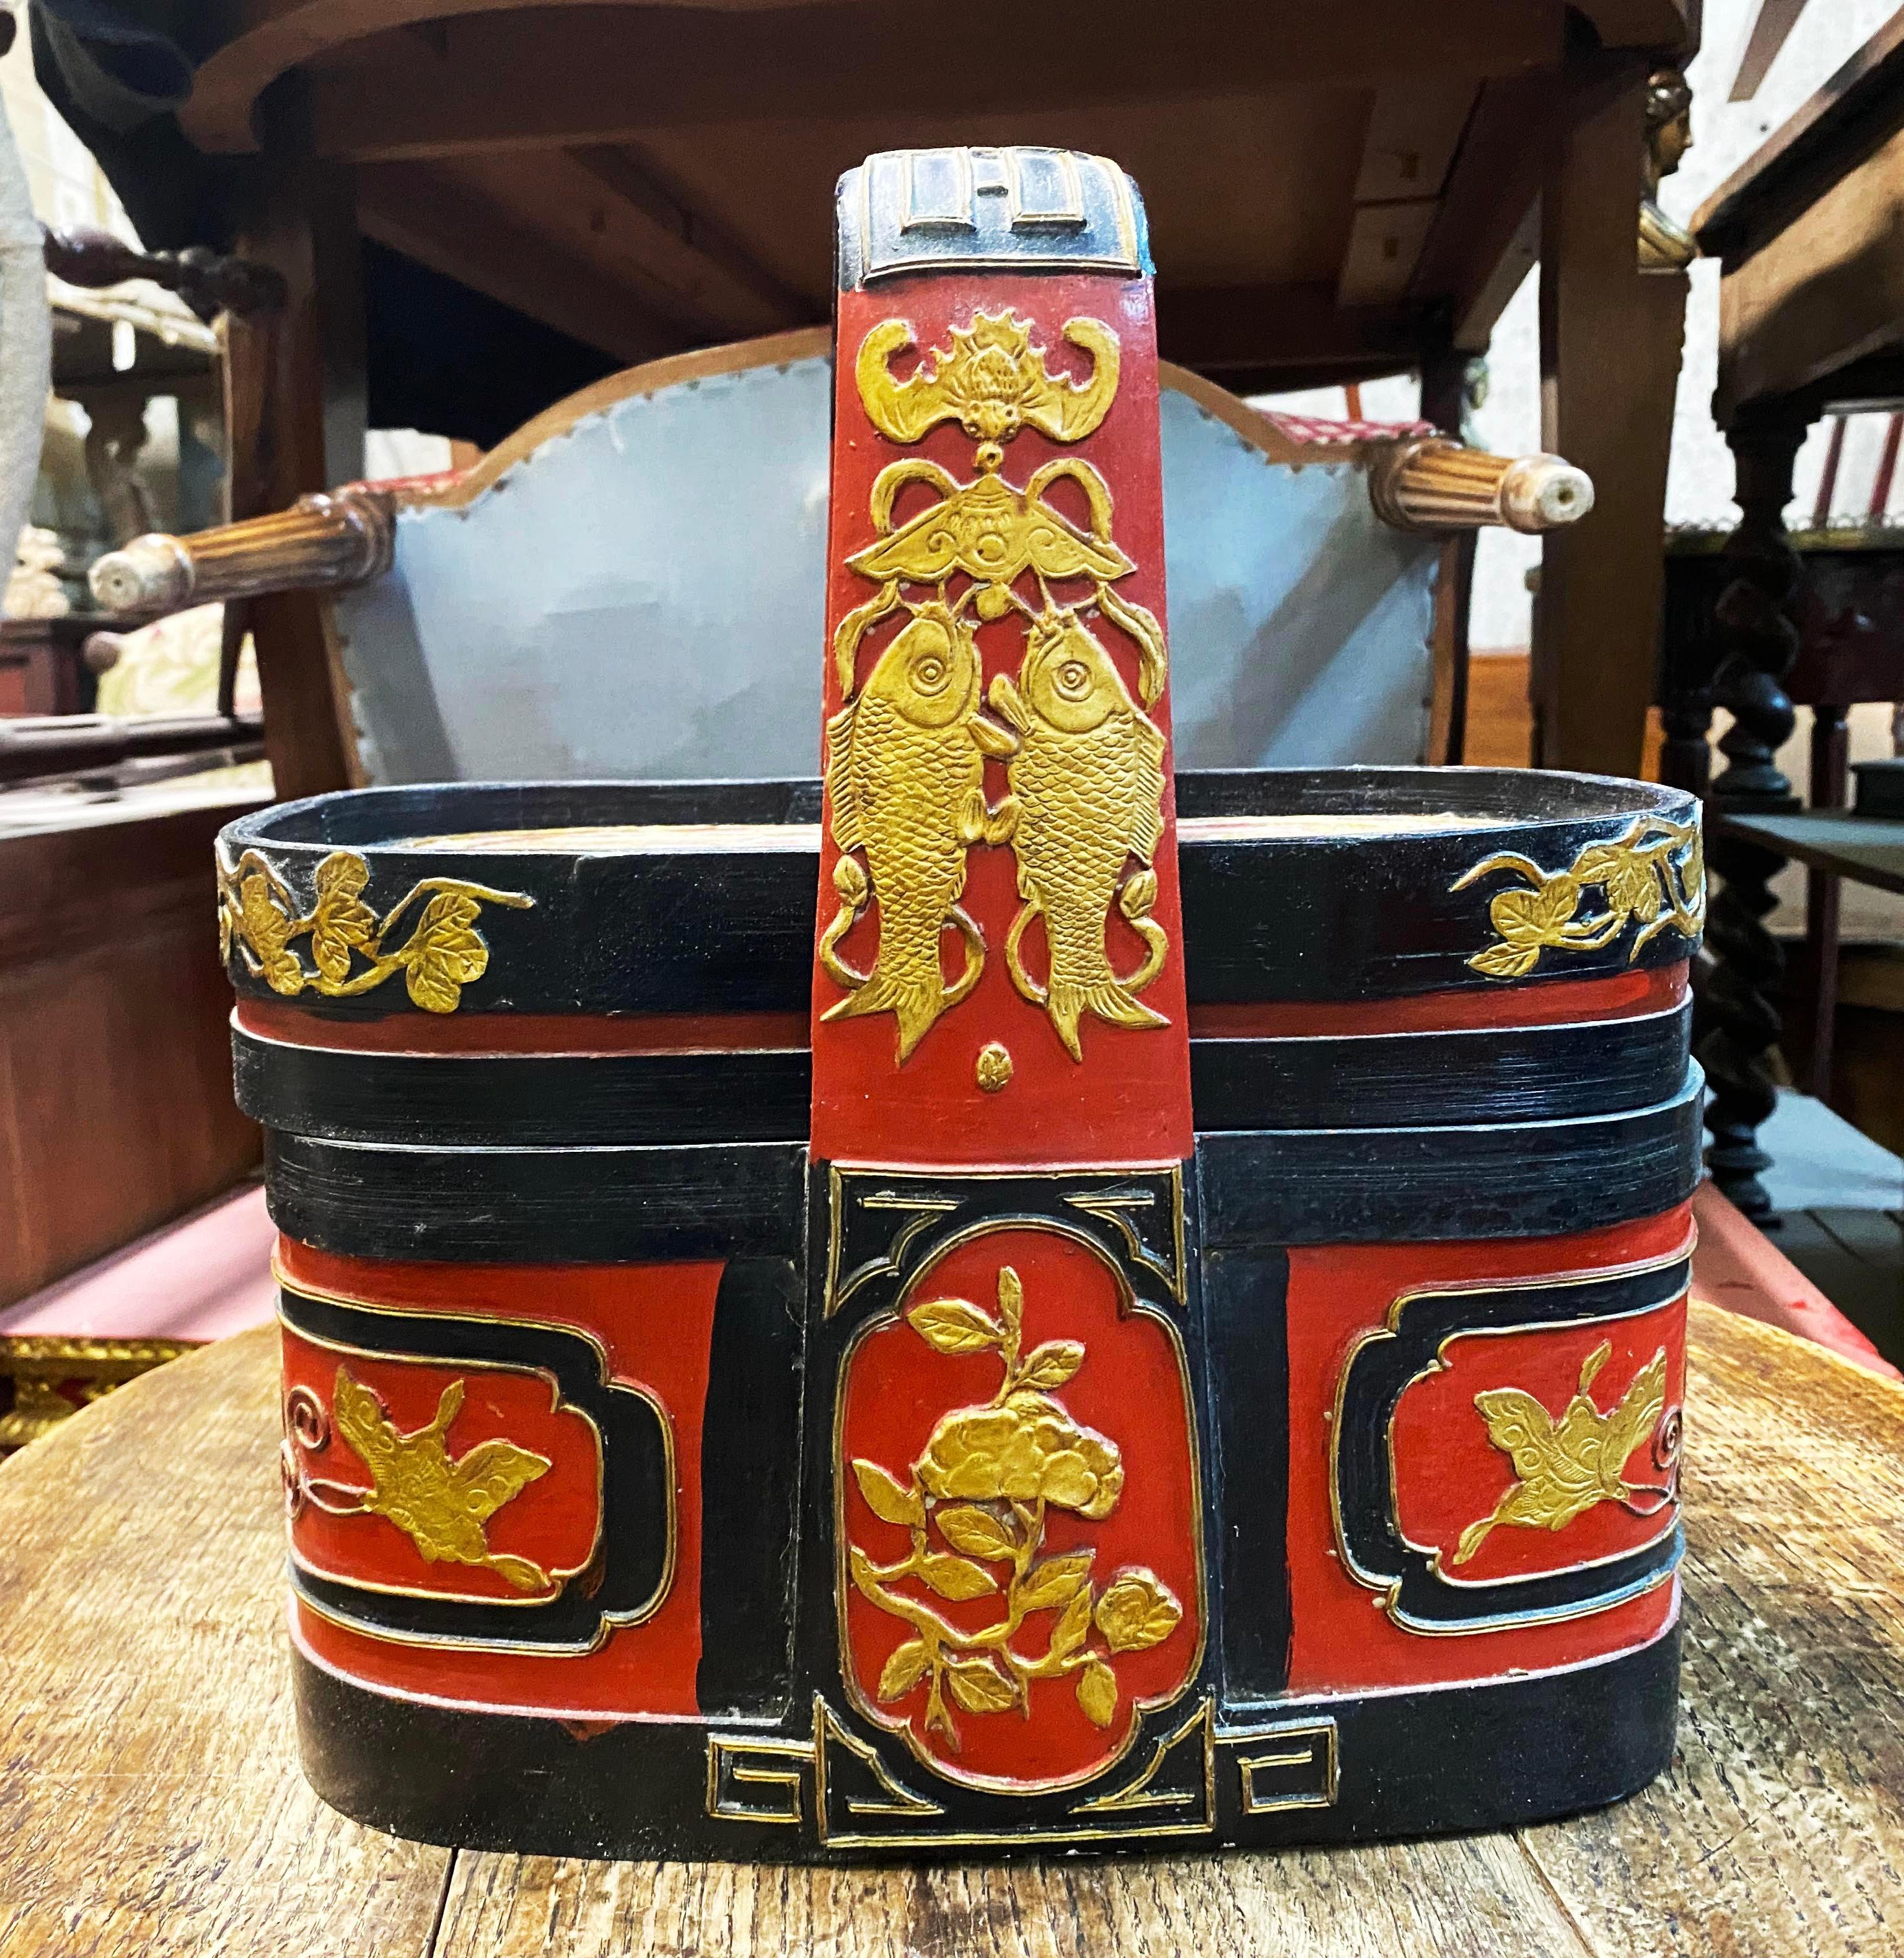 Antiker chinesischer Hochzeitskorb aus Holz (um 1860 - 1880) mit roter und schwarzer Lackierung. Sogenannter Pekinger Opernkorb. Der Deckel aus Blattgold zeigt einen chinesischen Weisen auf einem Pferd mit Dienern. Auf den Griffen sind zwei